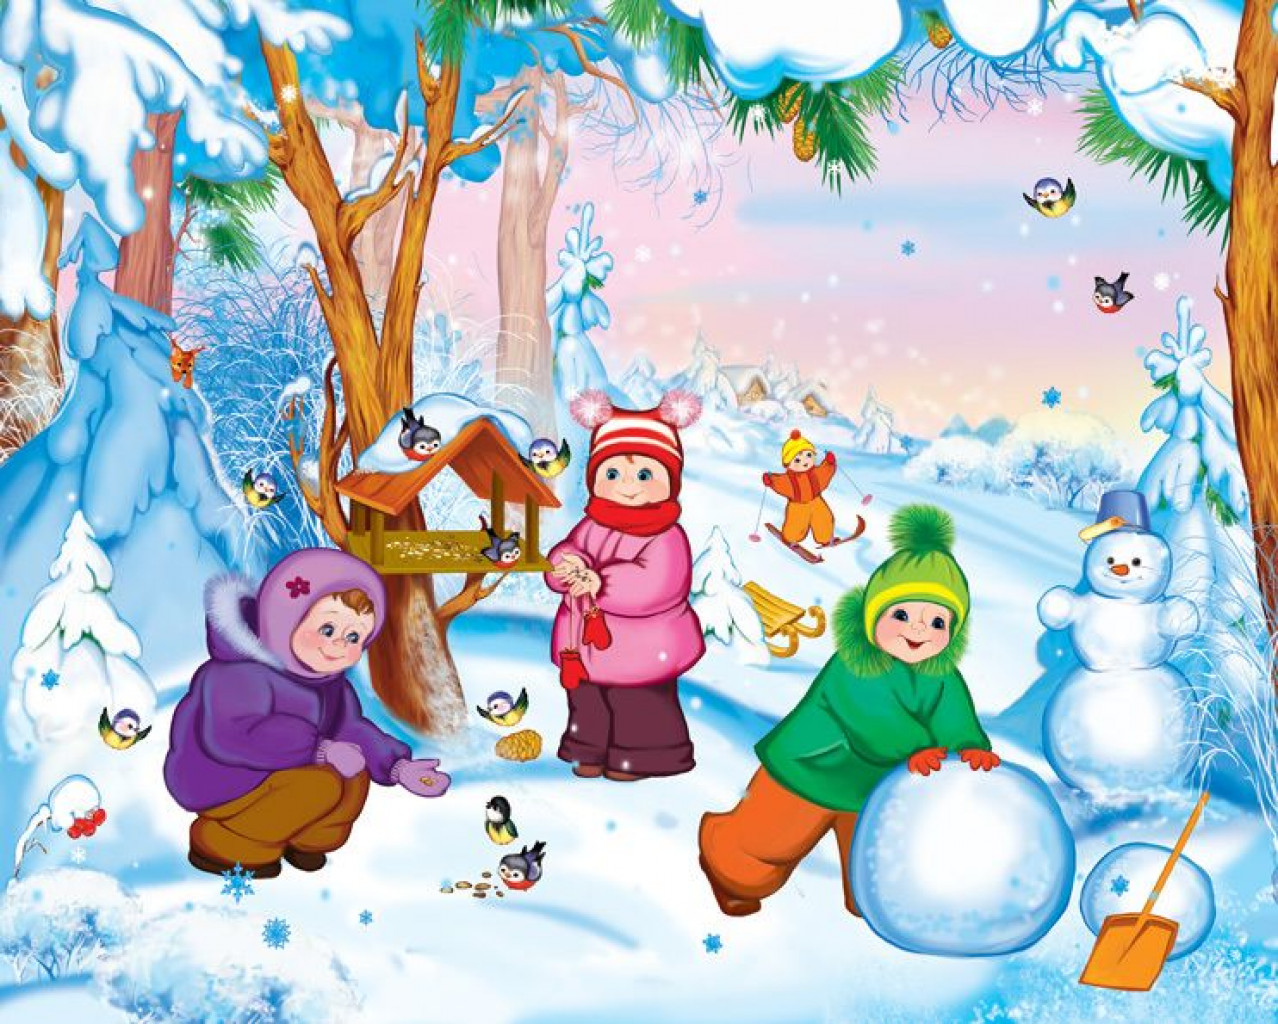 Картинка зимы для детей в детском саду. Зима в детском саду. Зима для детей в детском саду. Зима иллюстрации для детей. Зима картинки для детского сада.